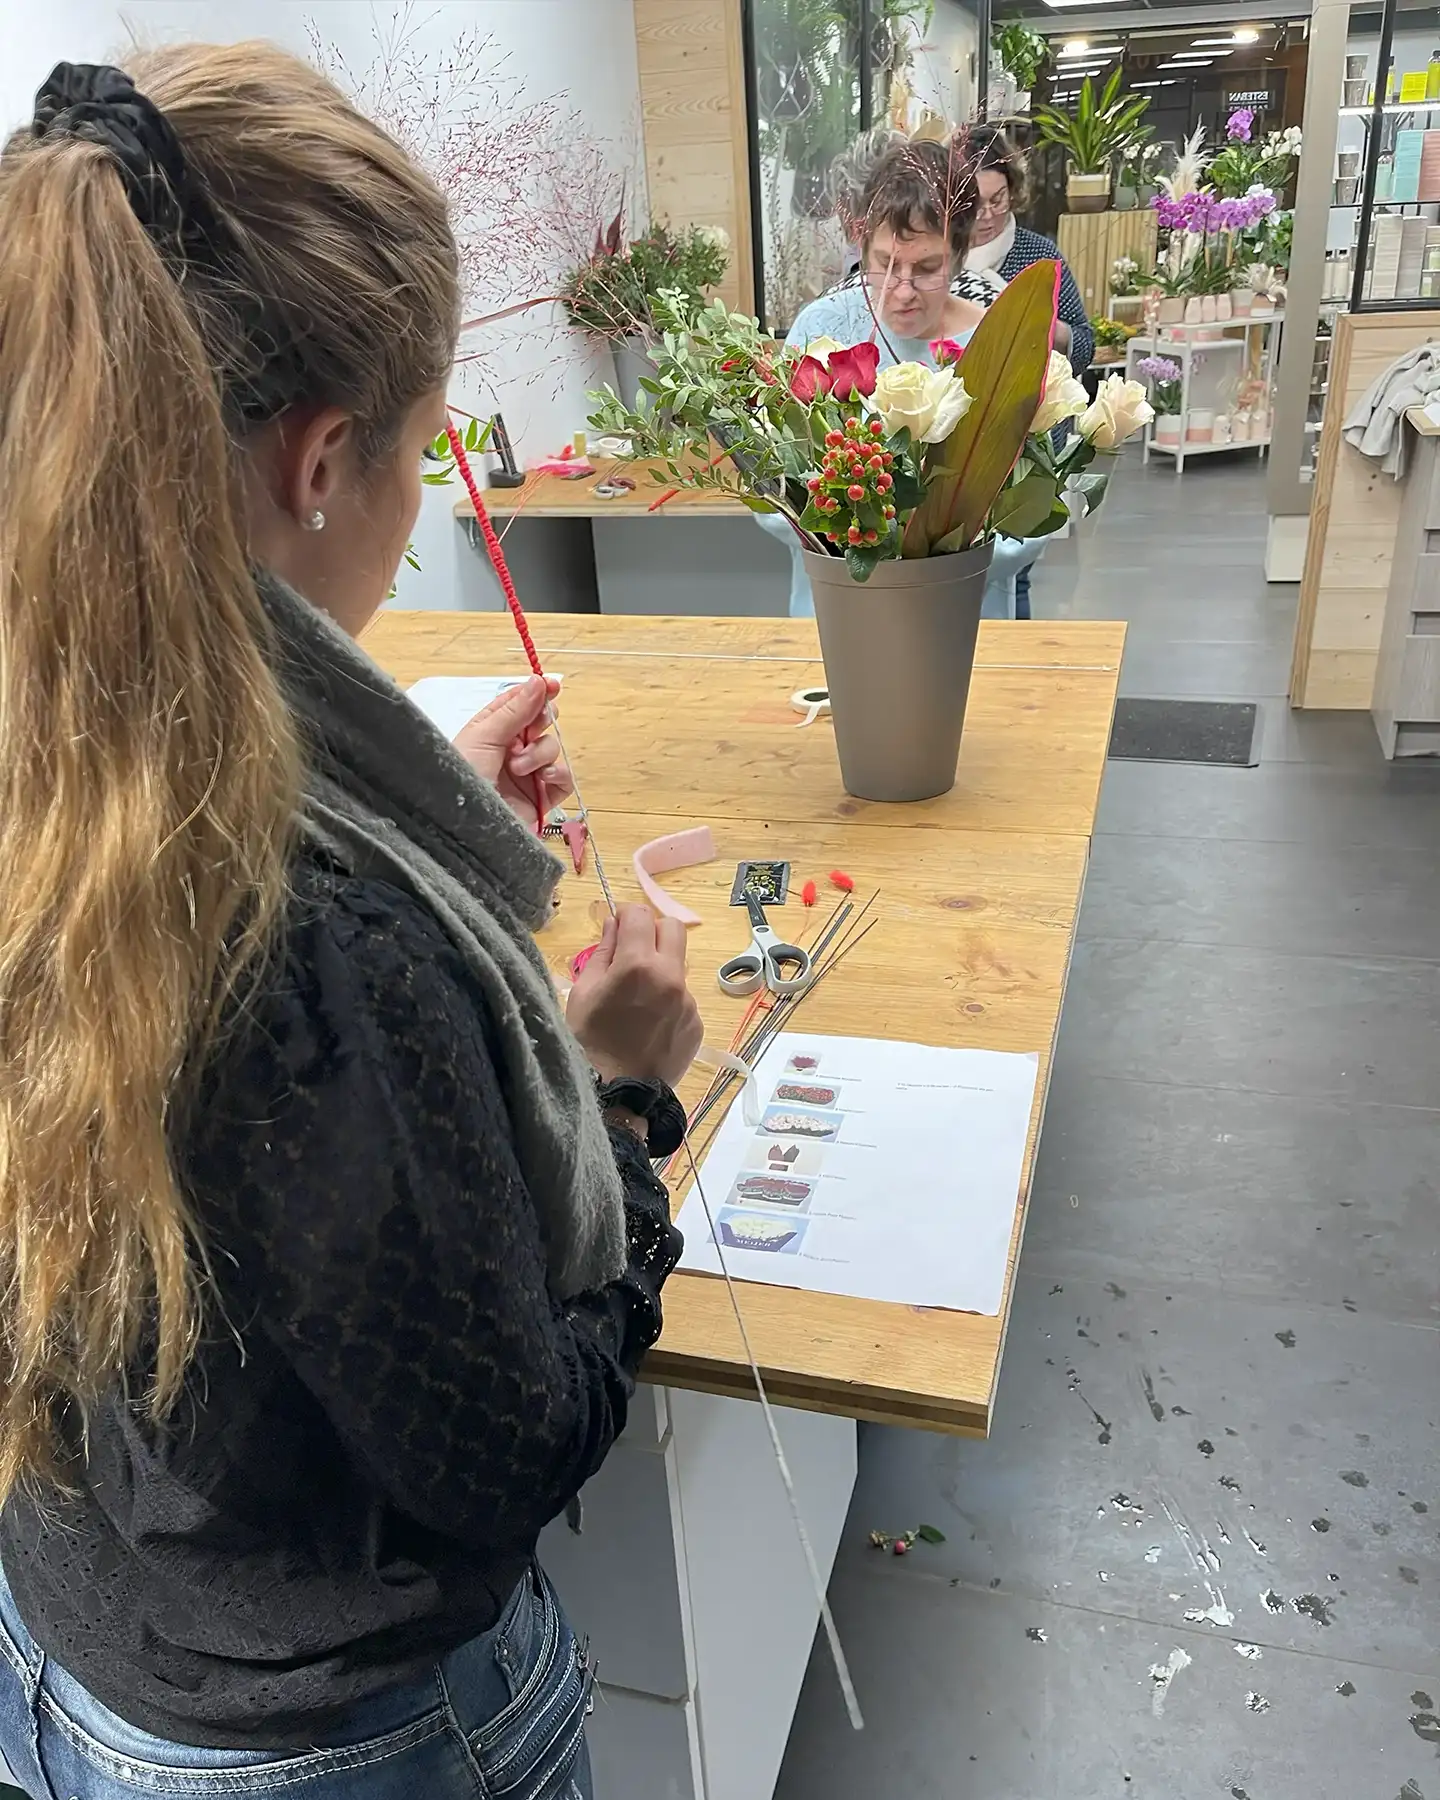 Atelier d'art floral Adulte